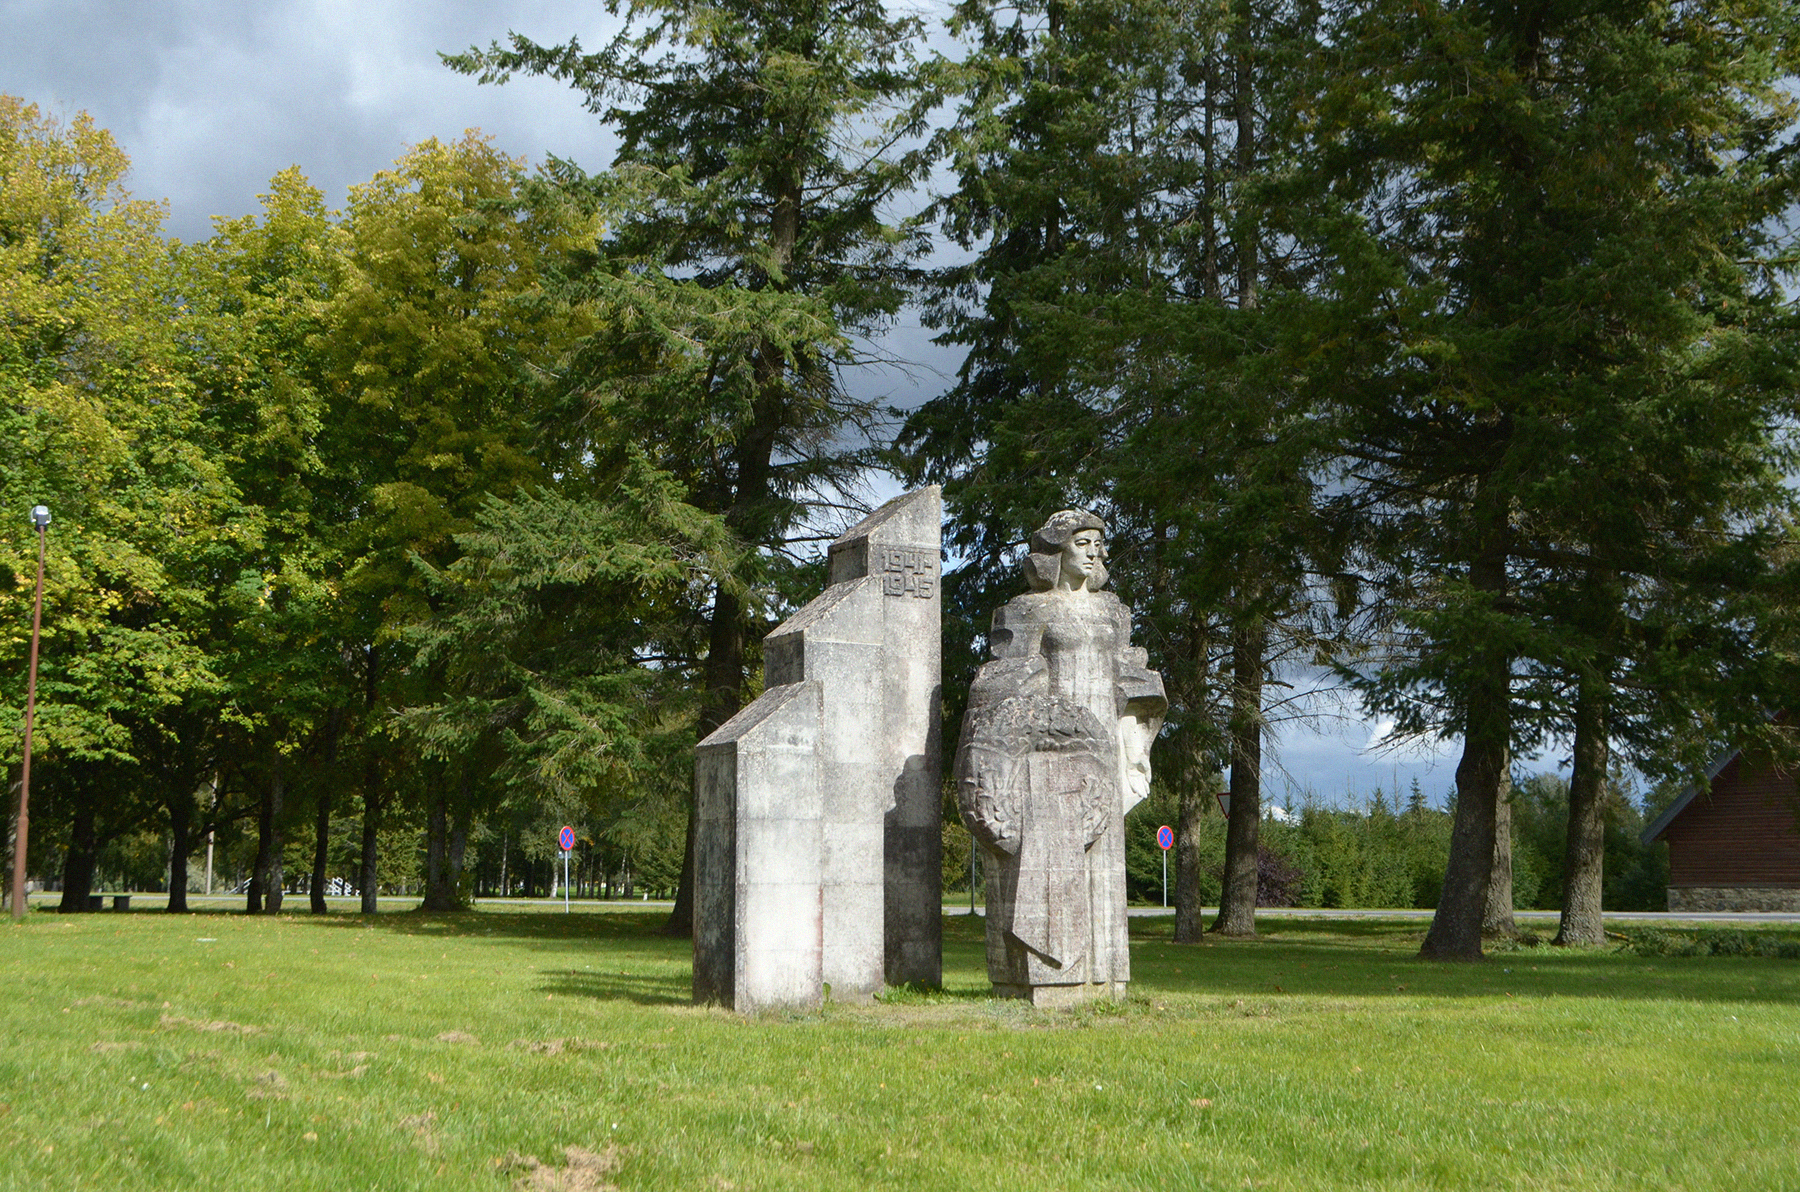 Vaade keset Järvamaal asuvat Väätsat seisvale monumendile Leinava Ema Väätsa Rahvamaja suunast.